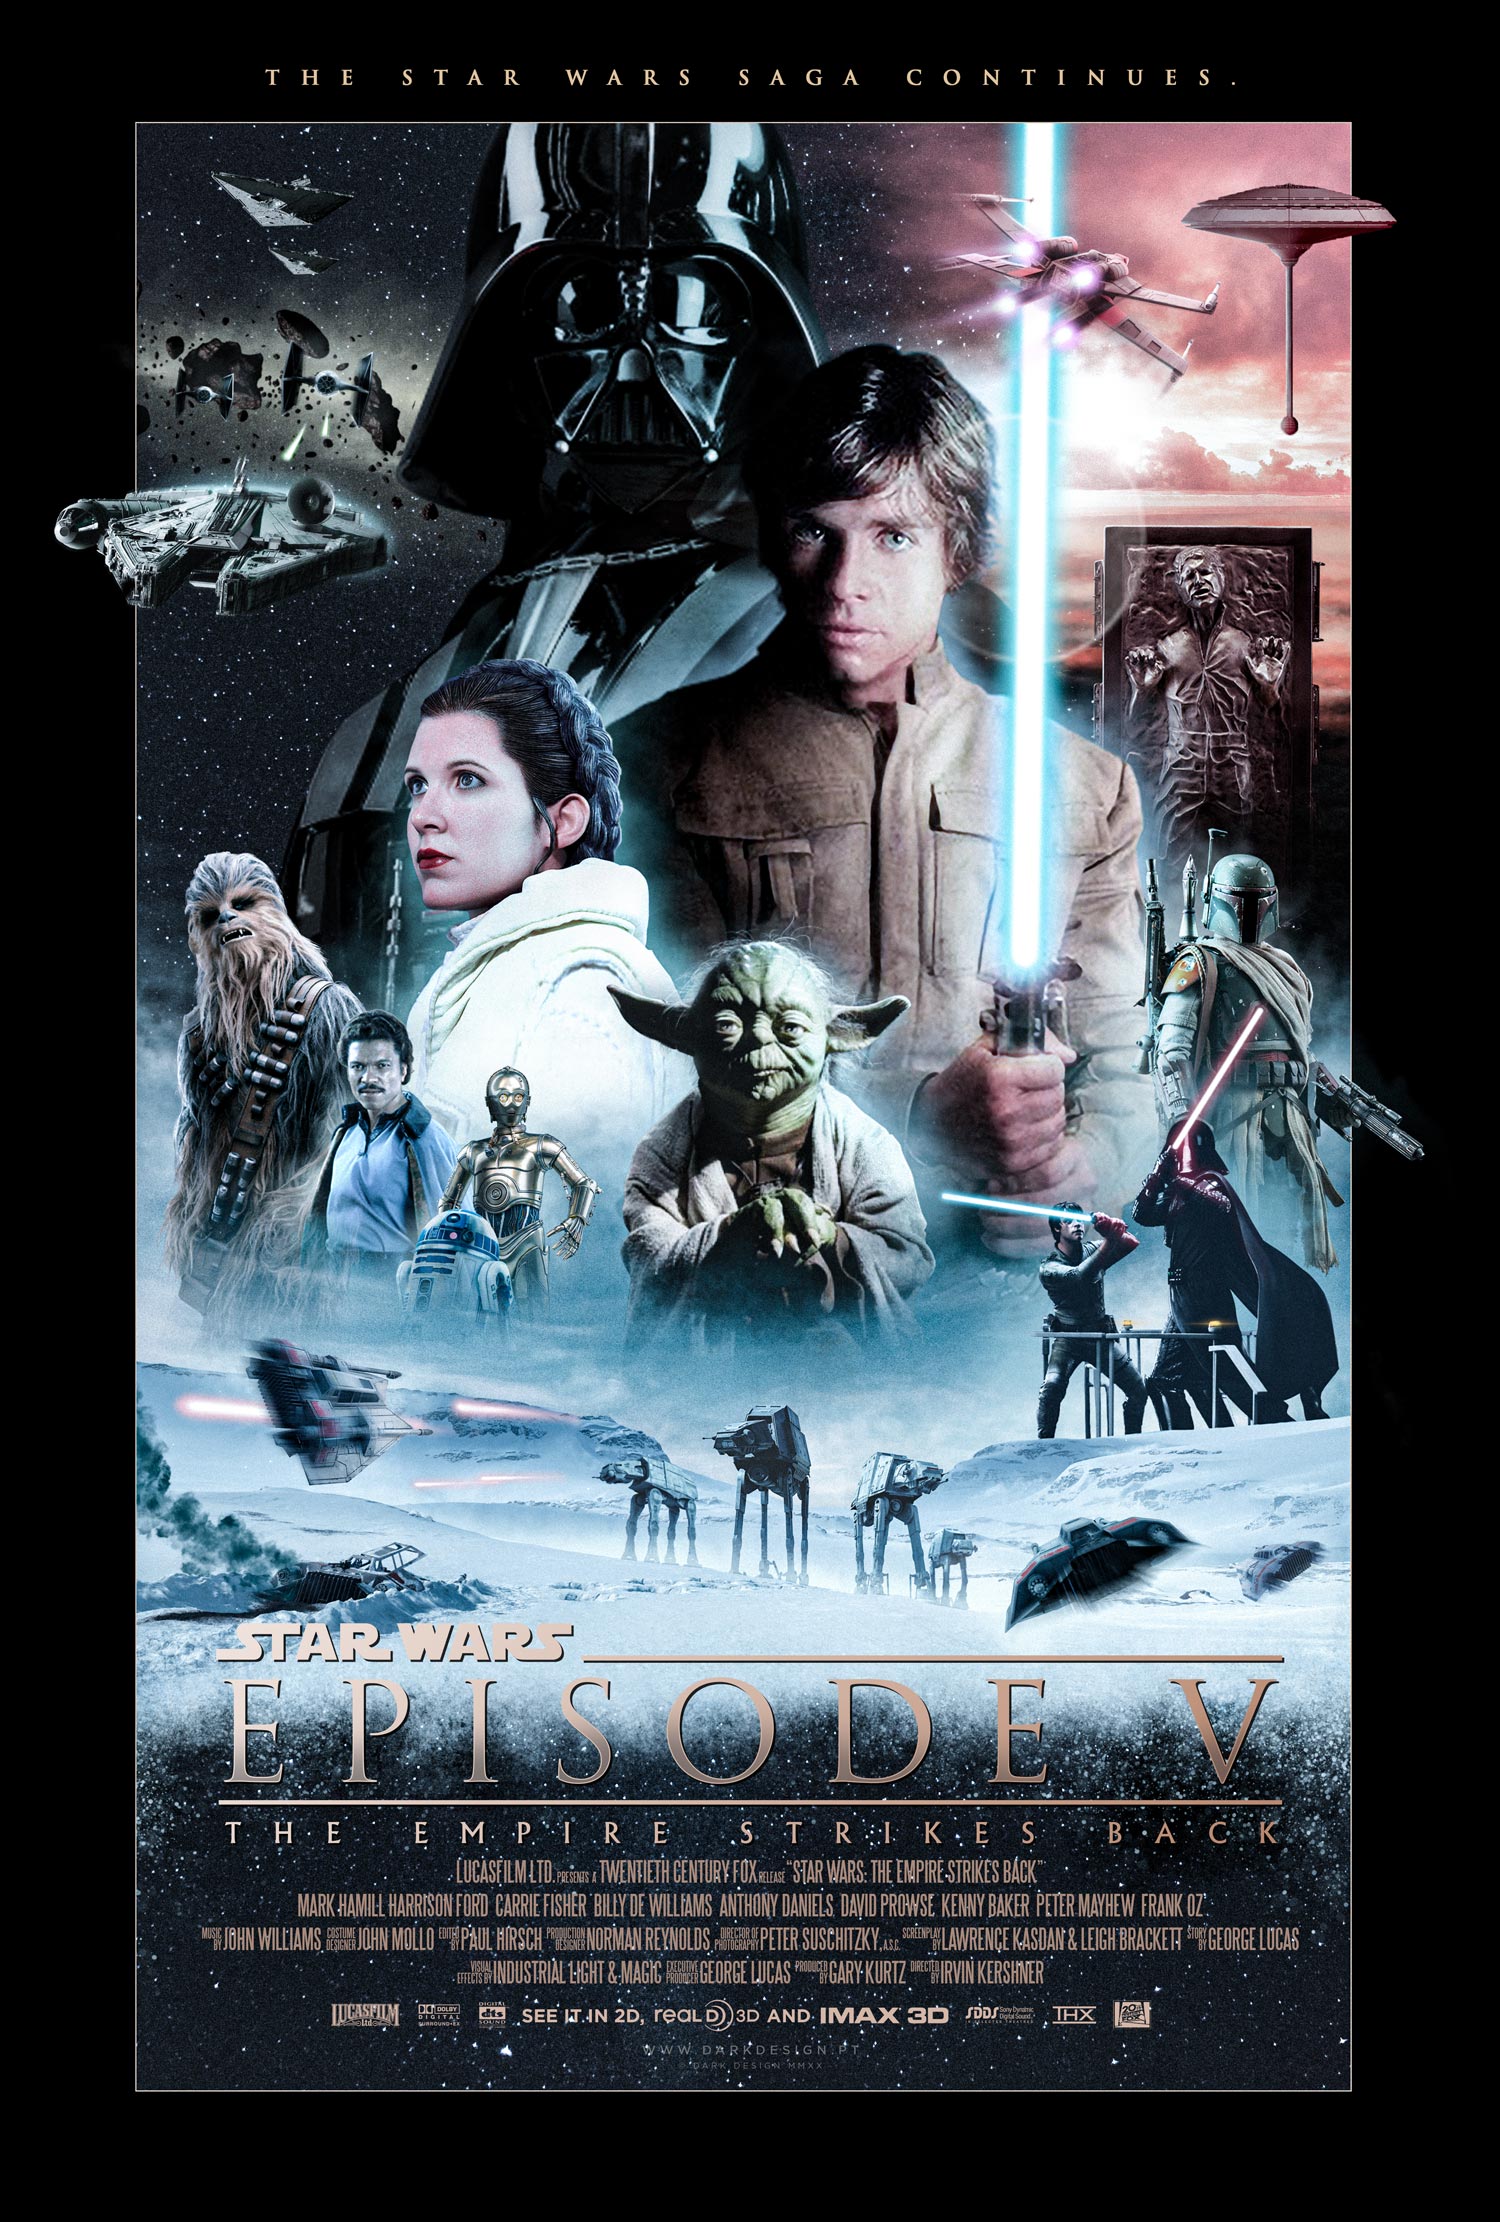 Rebel vs empire scenery star wars